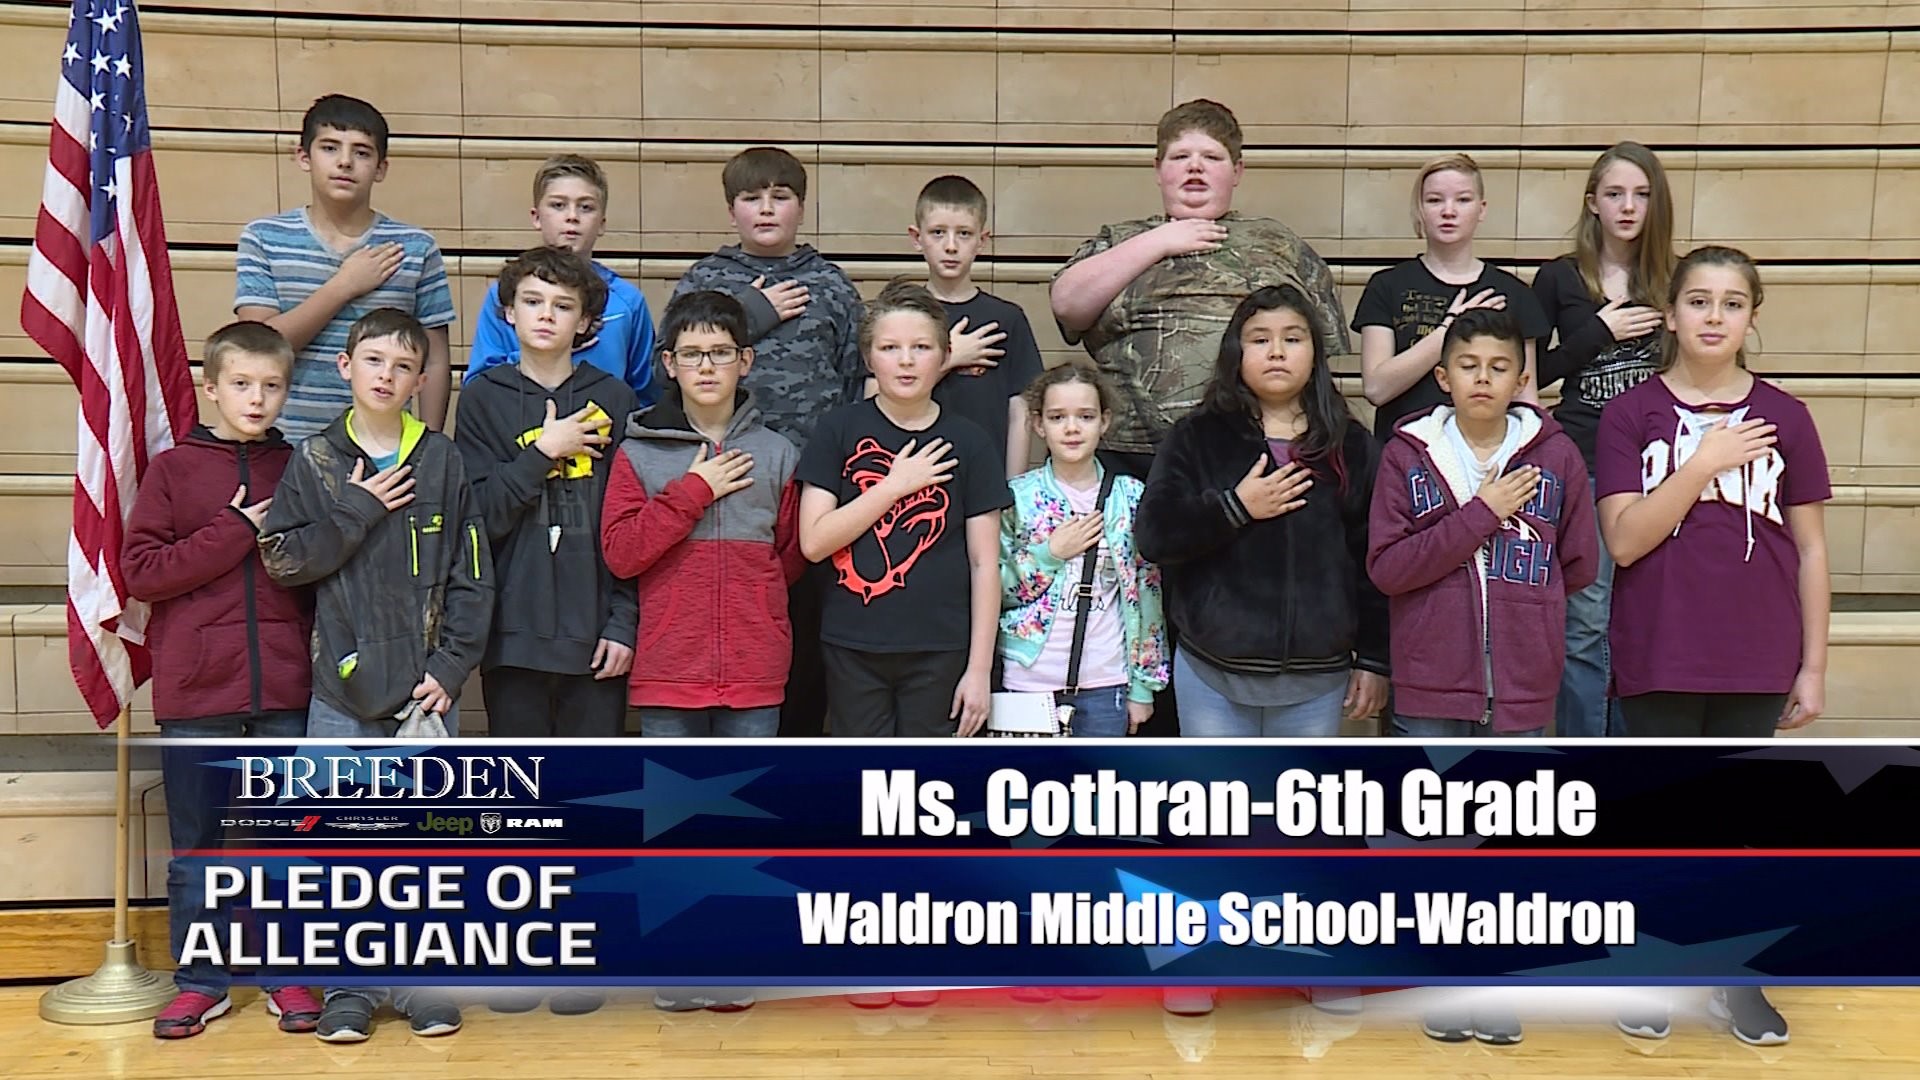 Ms. Cothran  6th Grade Waldron Middle School, Waldron